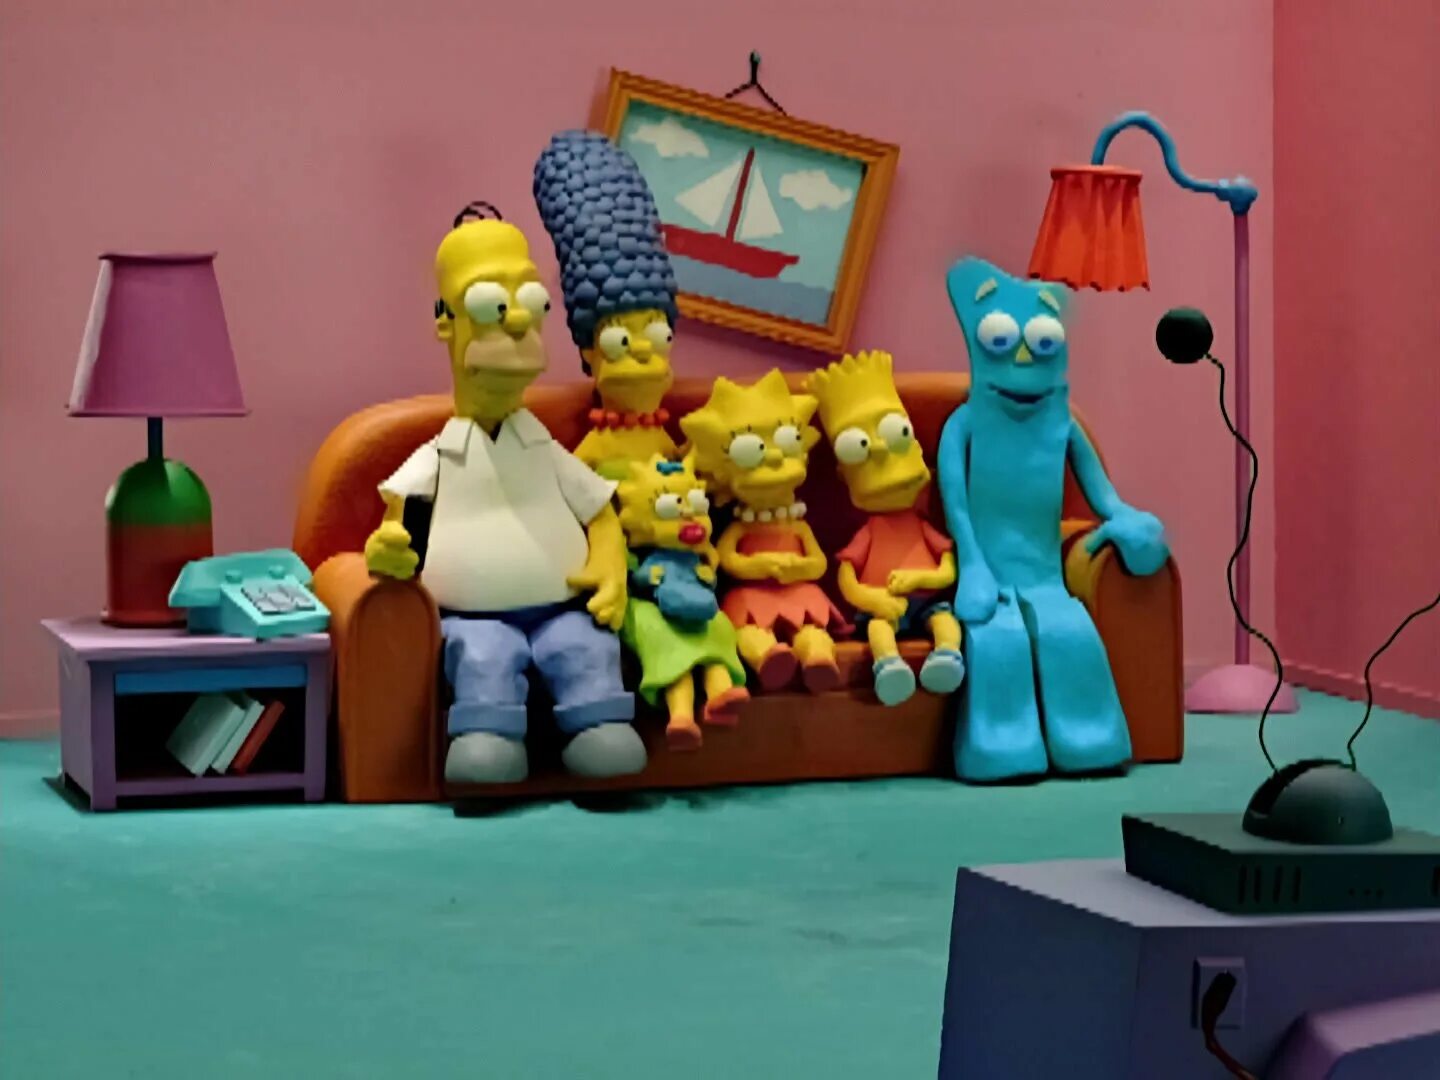 Комната из пластилина. Барт симпсон из пластилина. Мардж симпсон из пластилина. Симпсоны пластилин.